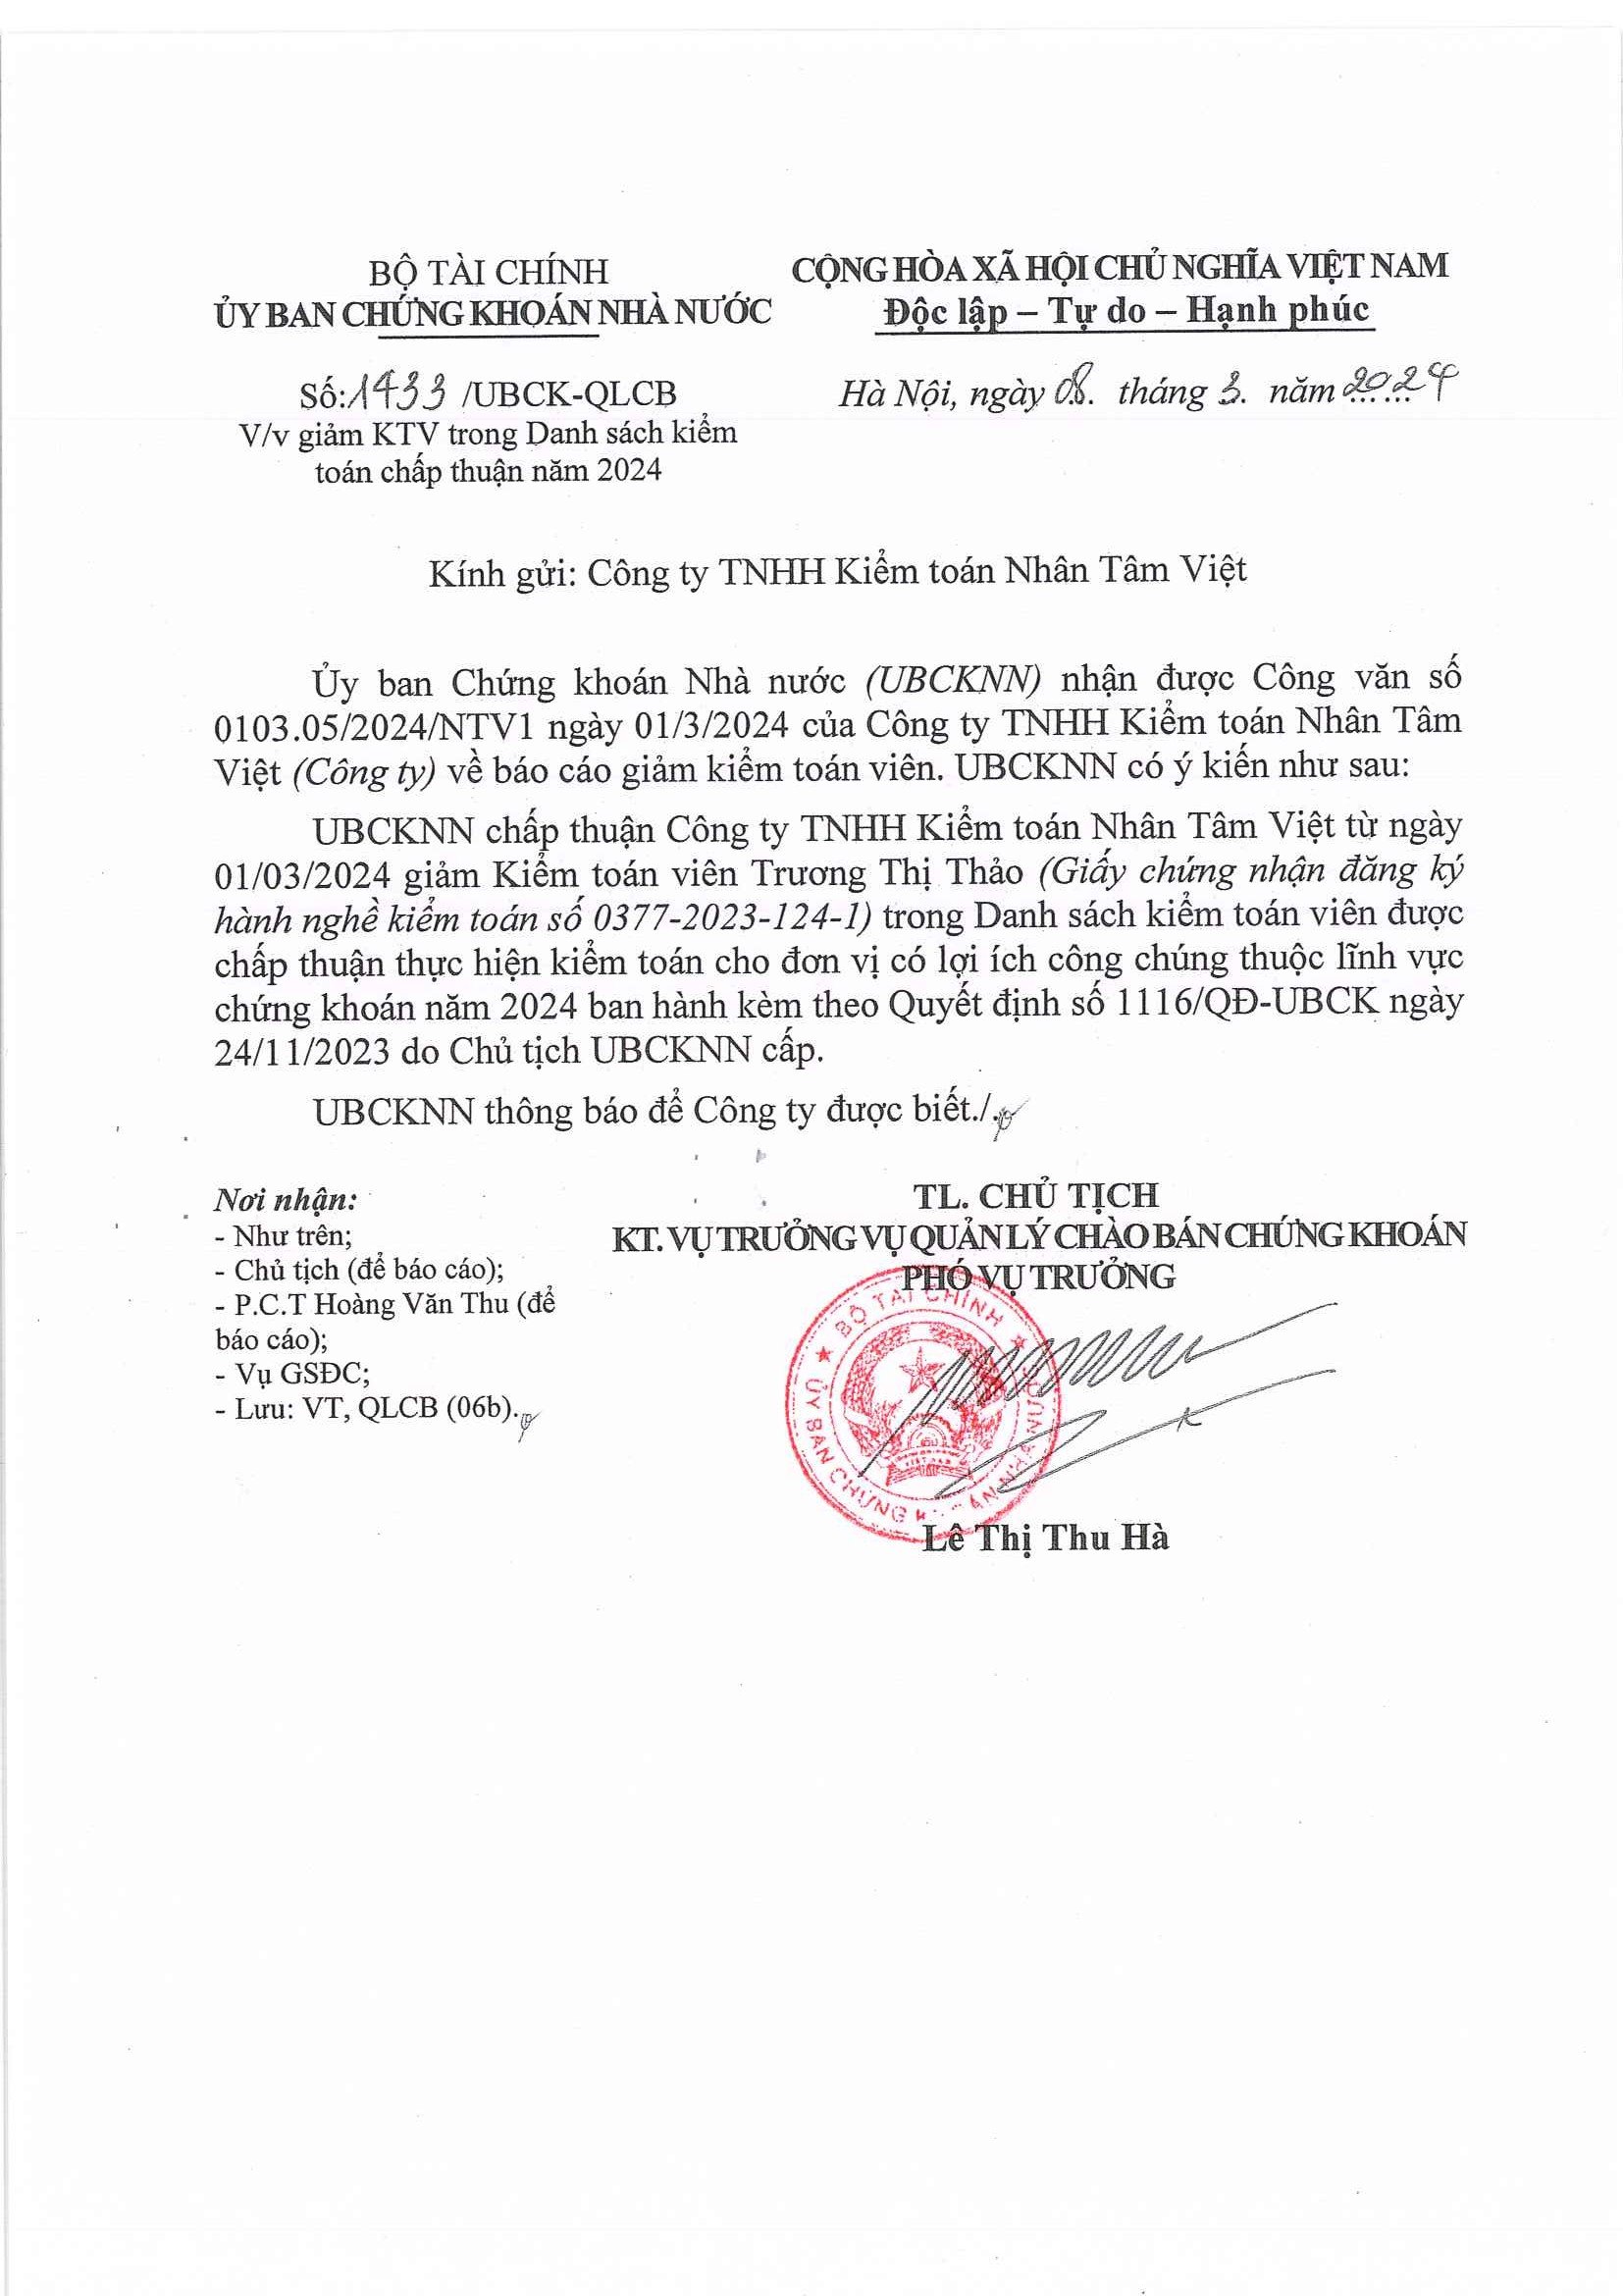 Cập nhật thông tin Báo cáo minh bạch tháng 3/2024 (Thông Báo Giảm kiểm toán viên Trương Thị Th��o trong danh sách Kiểm toán viên được kiểm toán cho các đơn vị có LICC năm 2024)